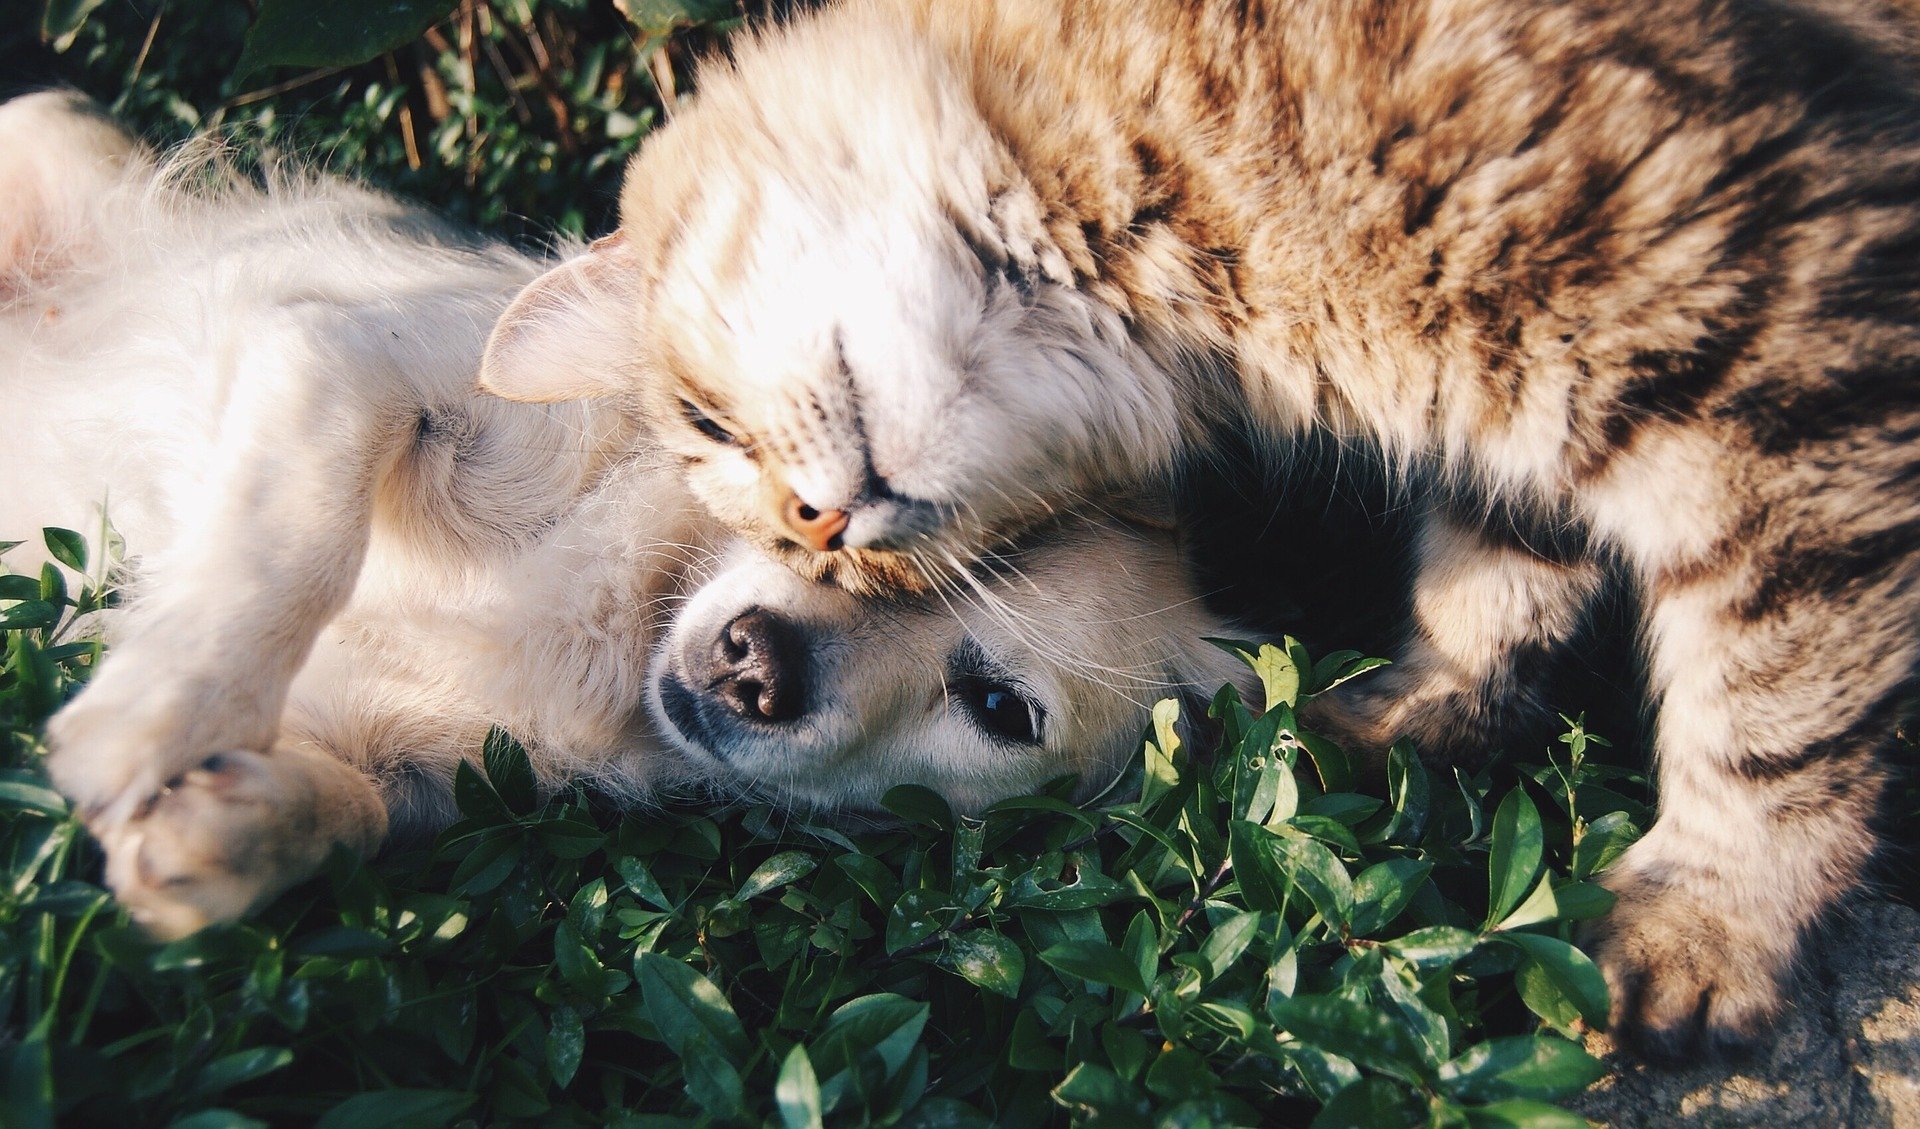 Compartir con una mascota puede traer beneficios emocionales. (Foto Prensa Libre: Pixabay)